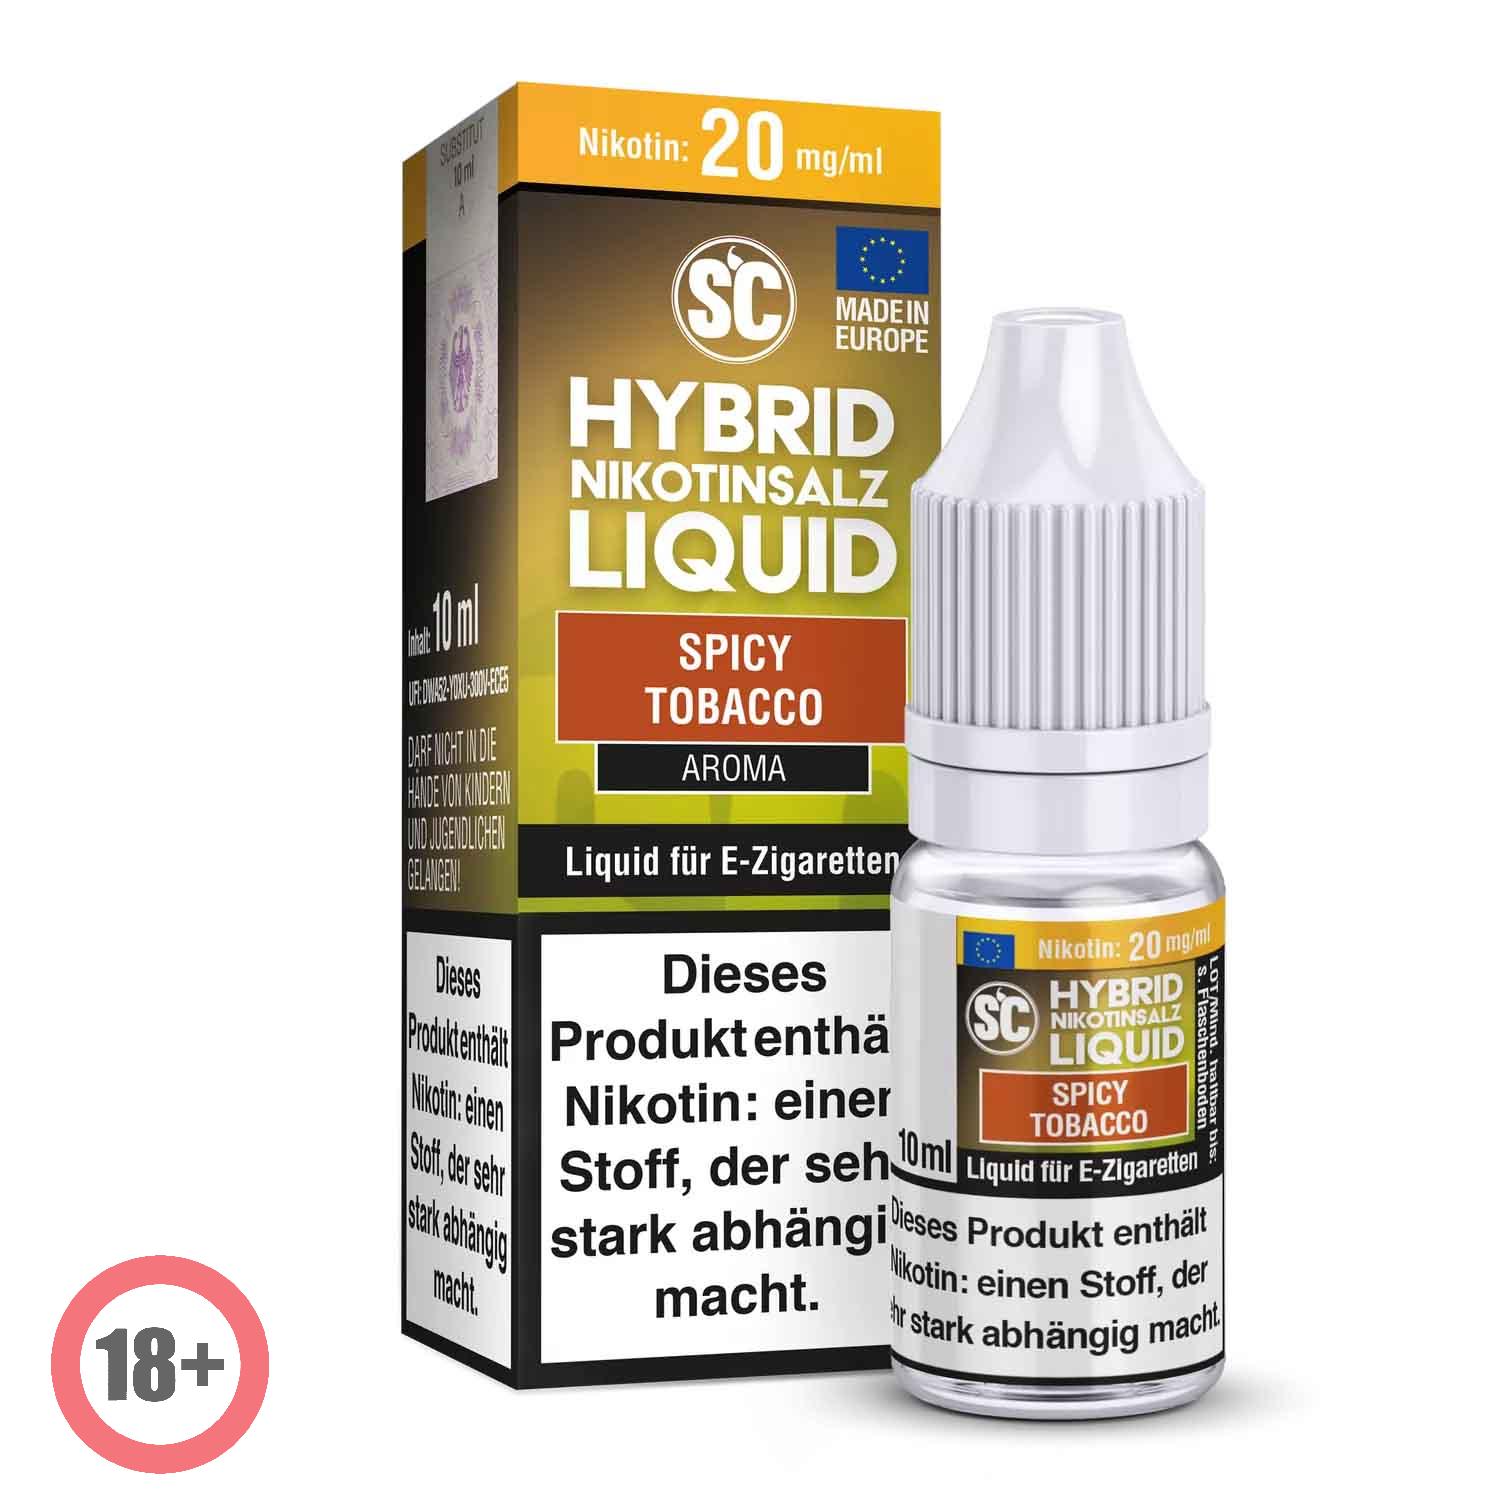 SC - Spicy Tobacco Hybrid Nikotinsalz Liquid ✅ Günstig kaufen! 